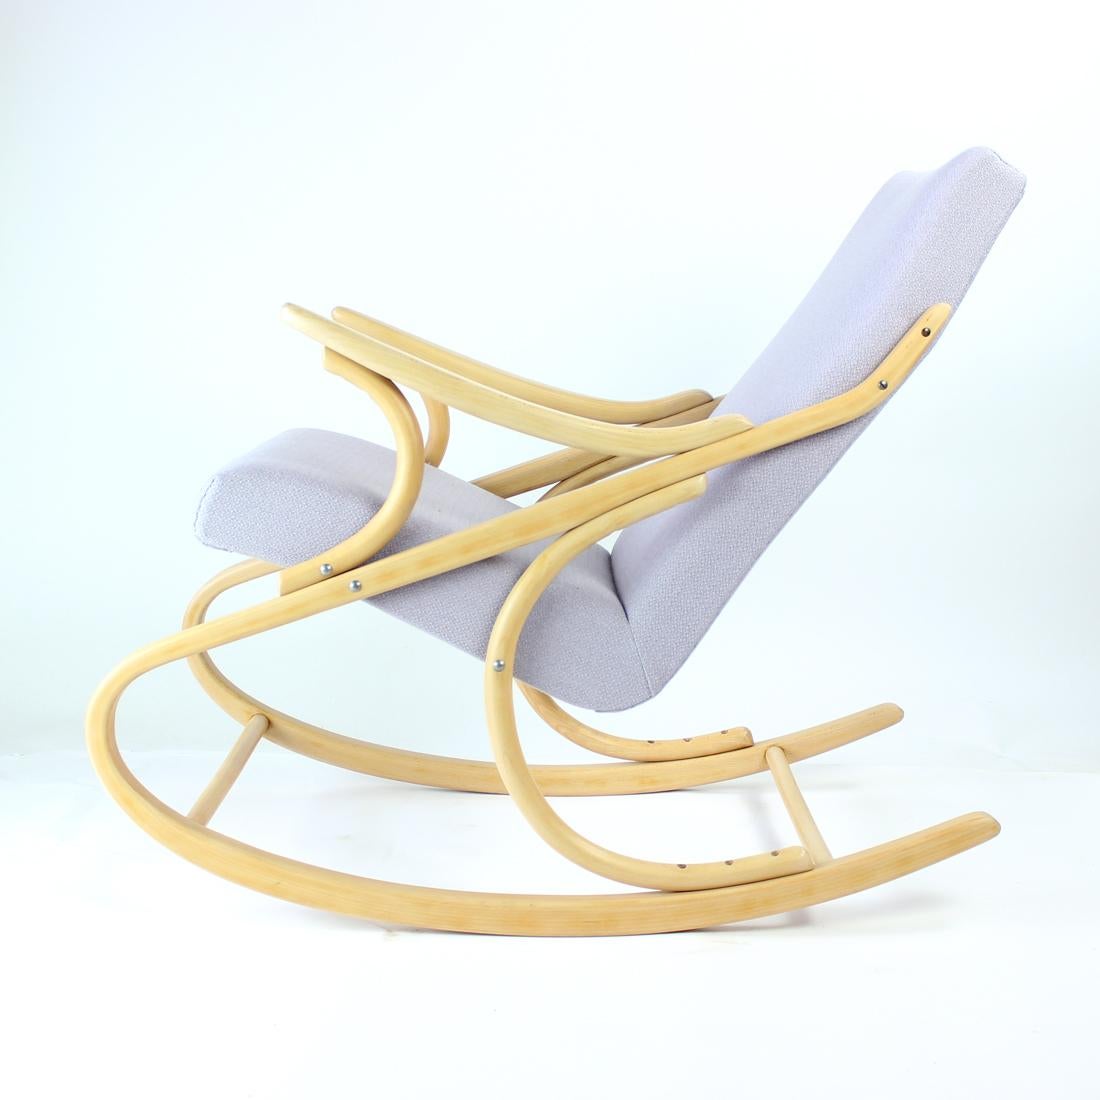 Beau fauteuil iconique conçu par Thonet, produit dans les années 1960 par la société TON en Tchécoslovaquie. Le fauteuil a été entièrement restauré et a un aspect étonnant. La construction en bois courbé iconique a été refinie dans la teinte blonde